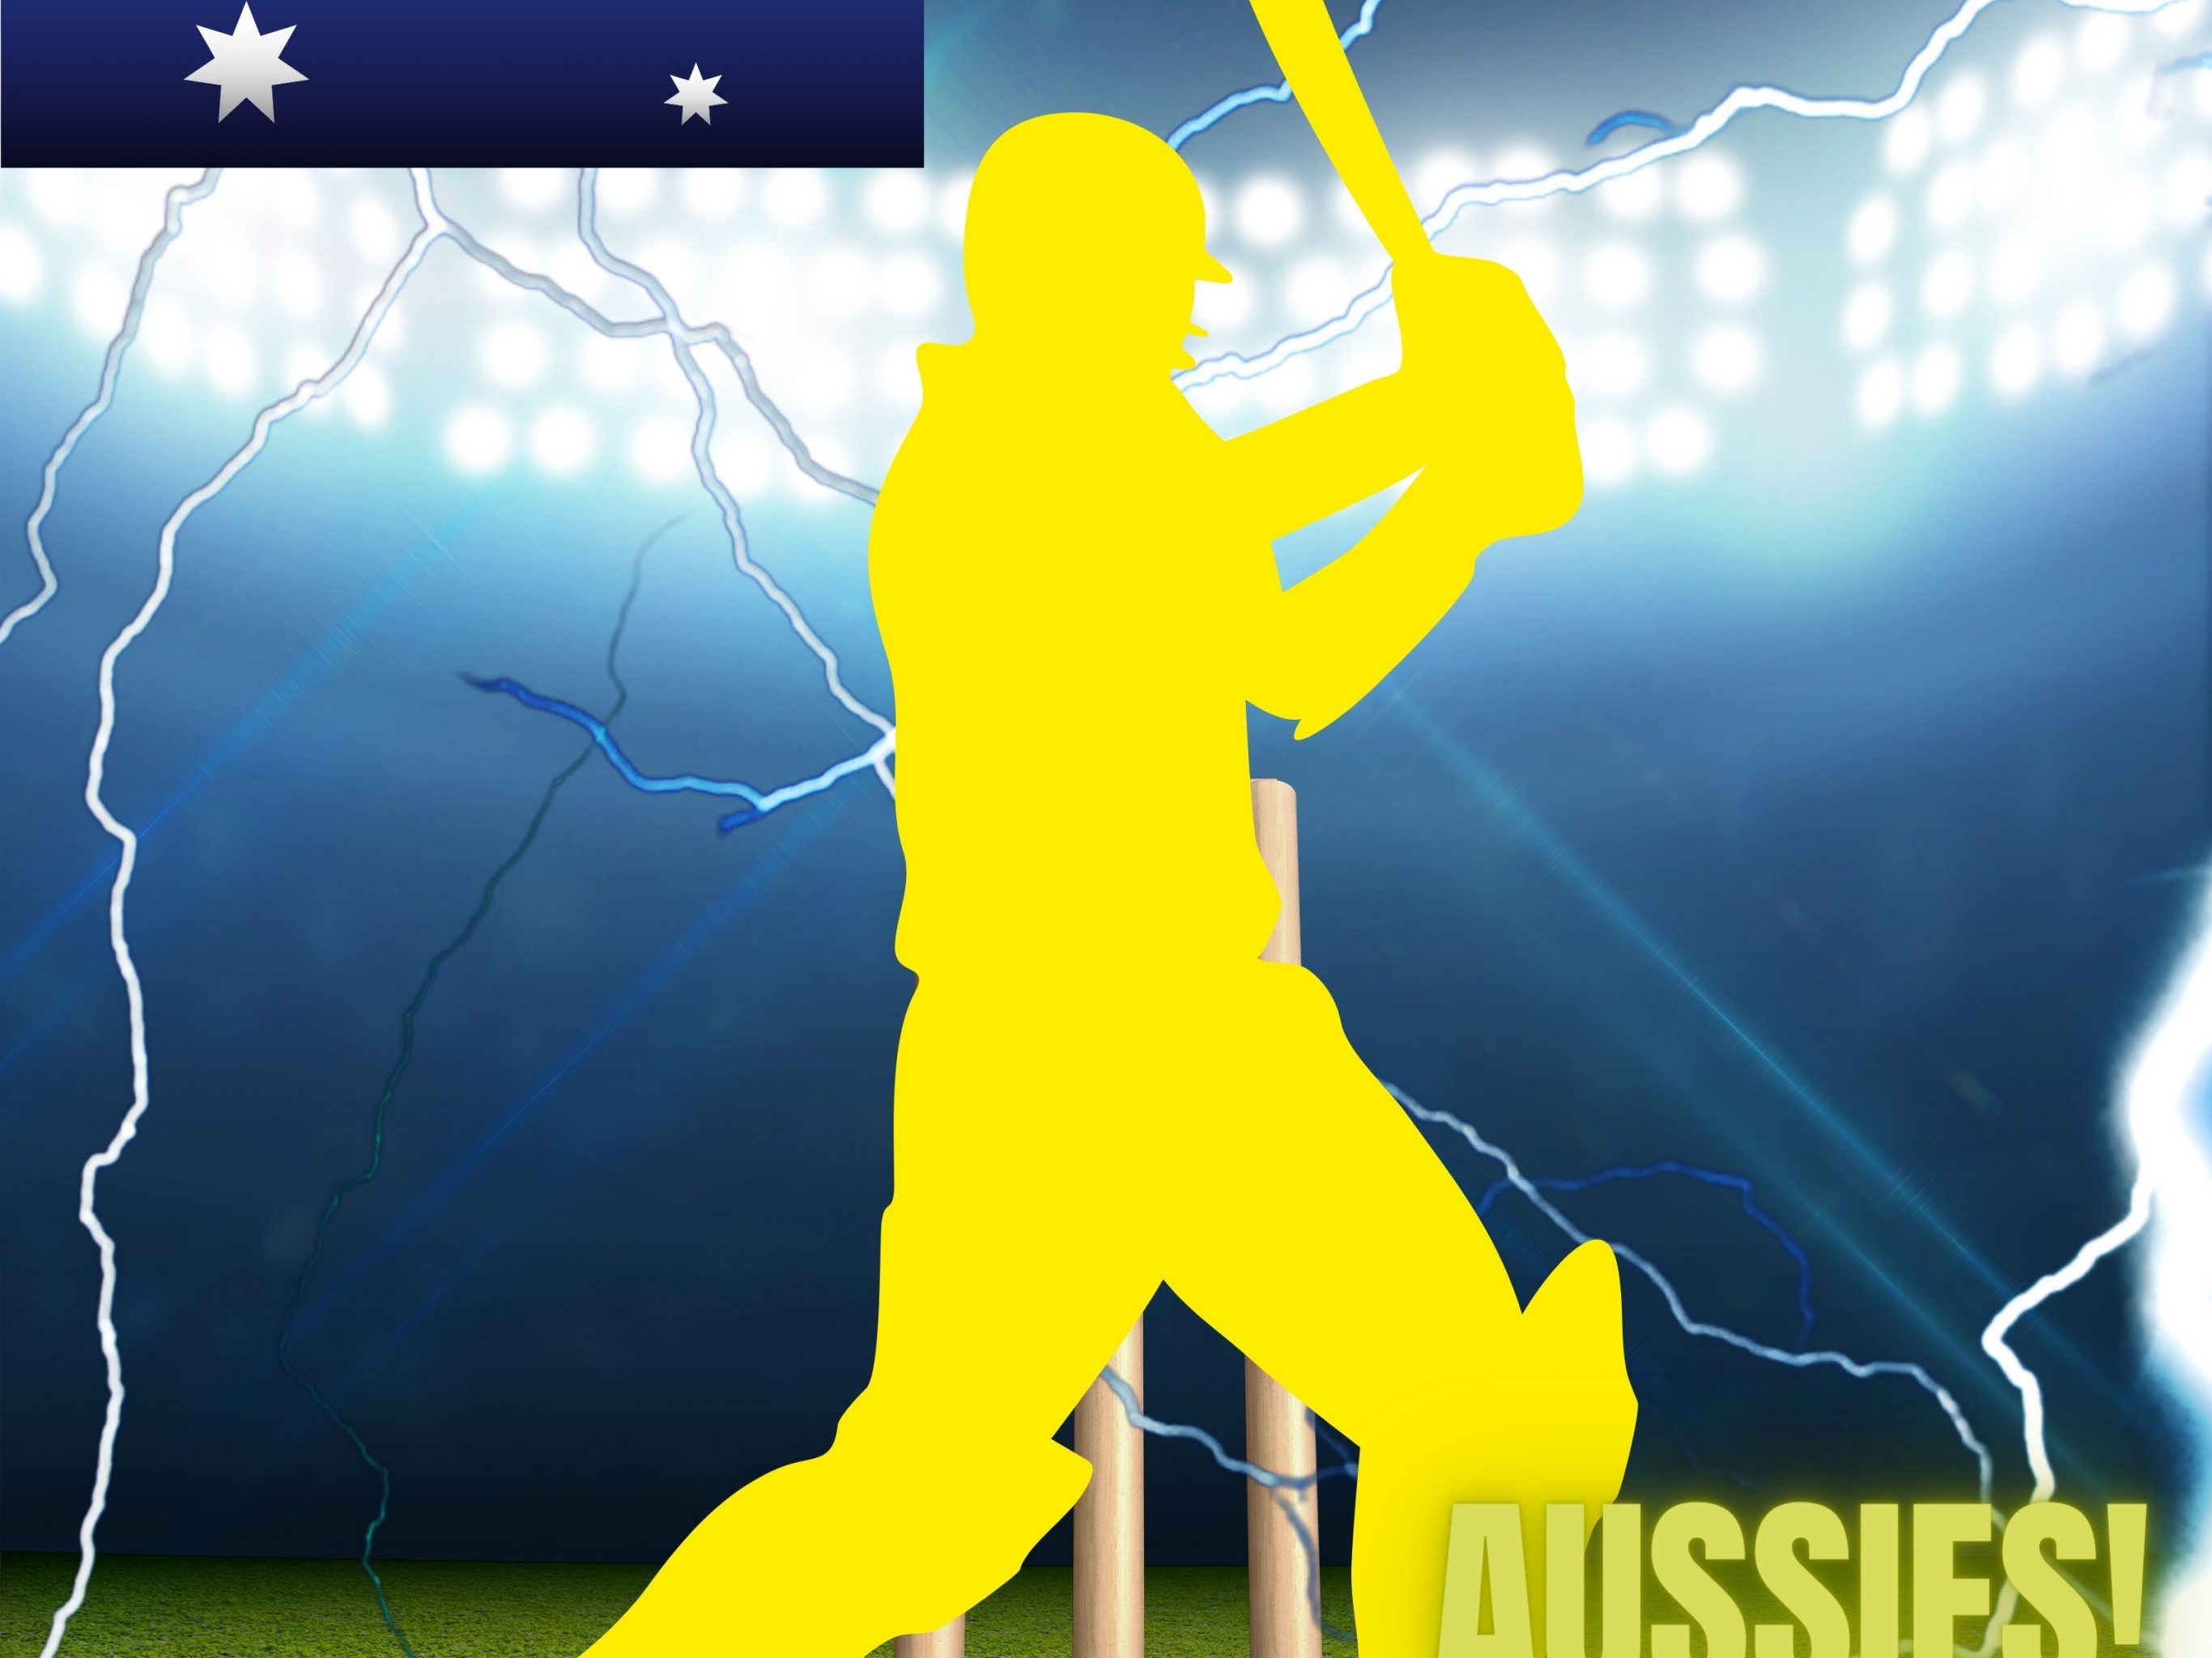 2732x2048 iPad air iPad Pro wallpapers Australia Cricket Stadium iPad Wallpaper 2732x2048 pixels resolution